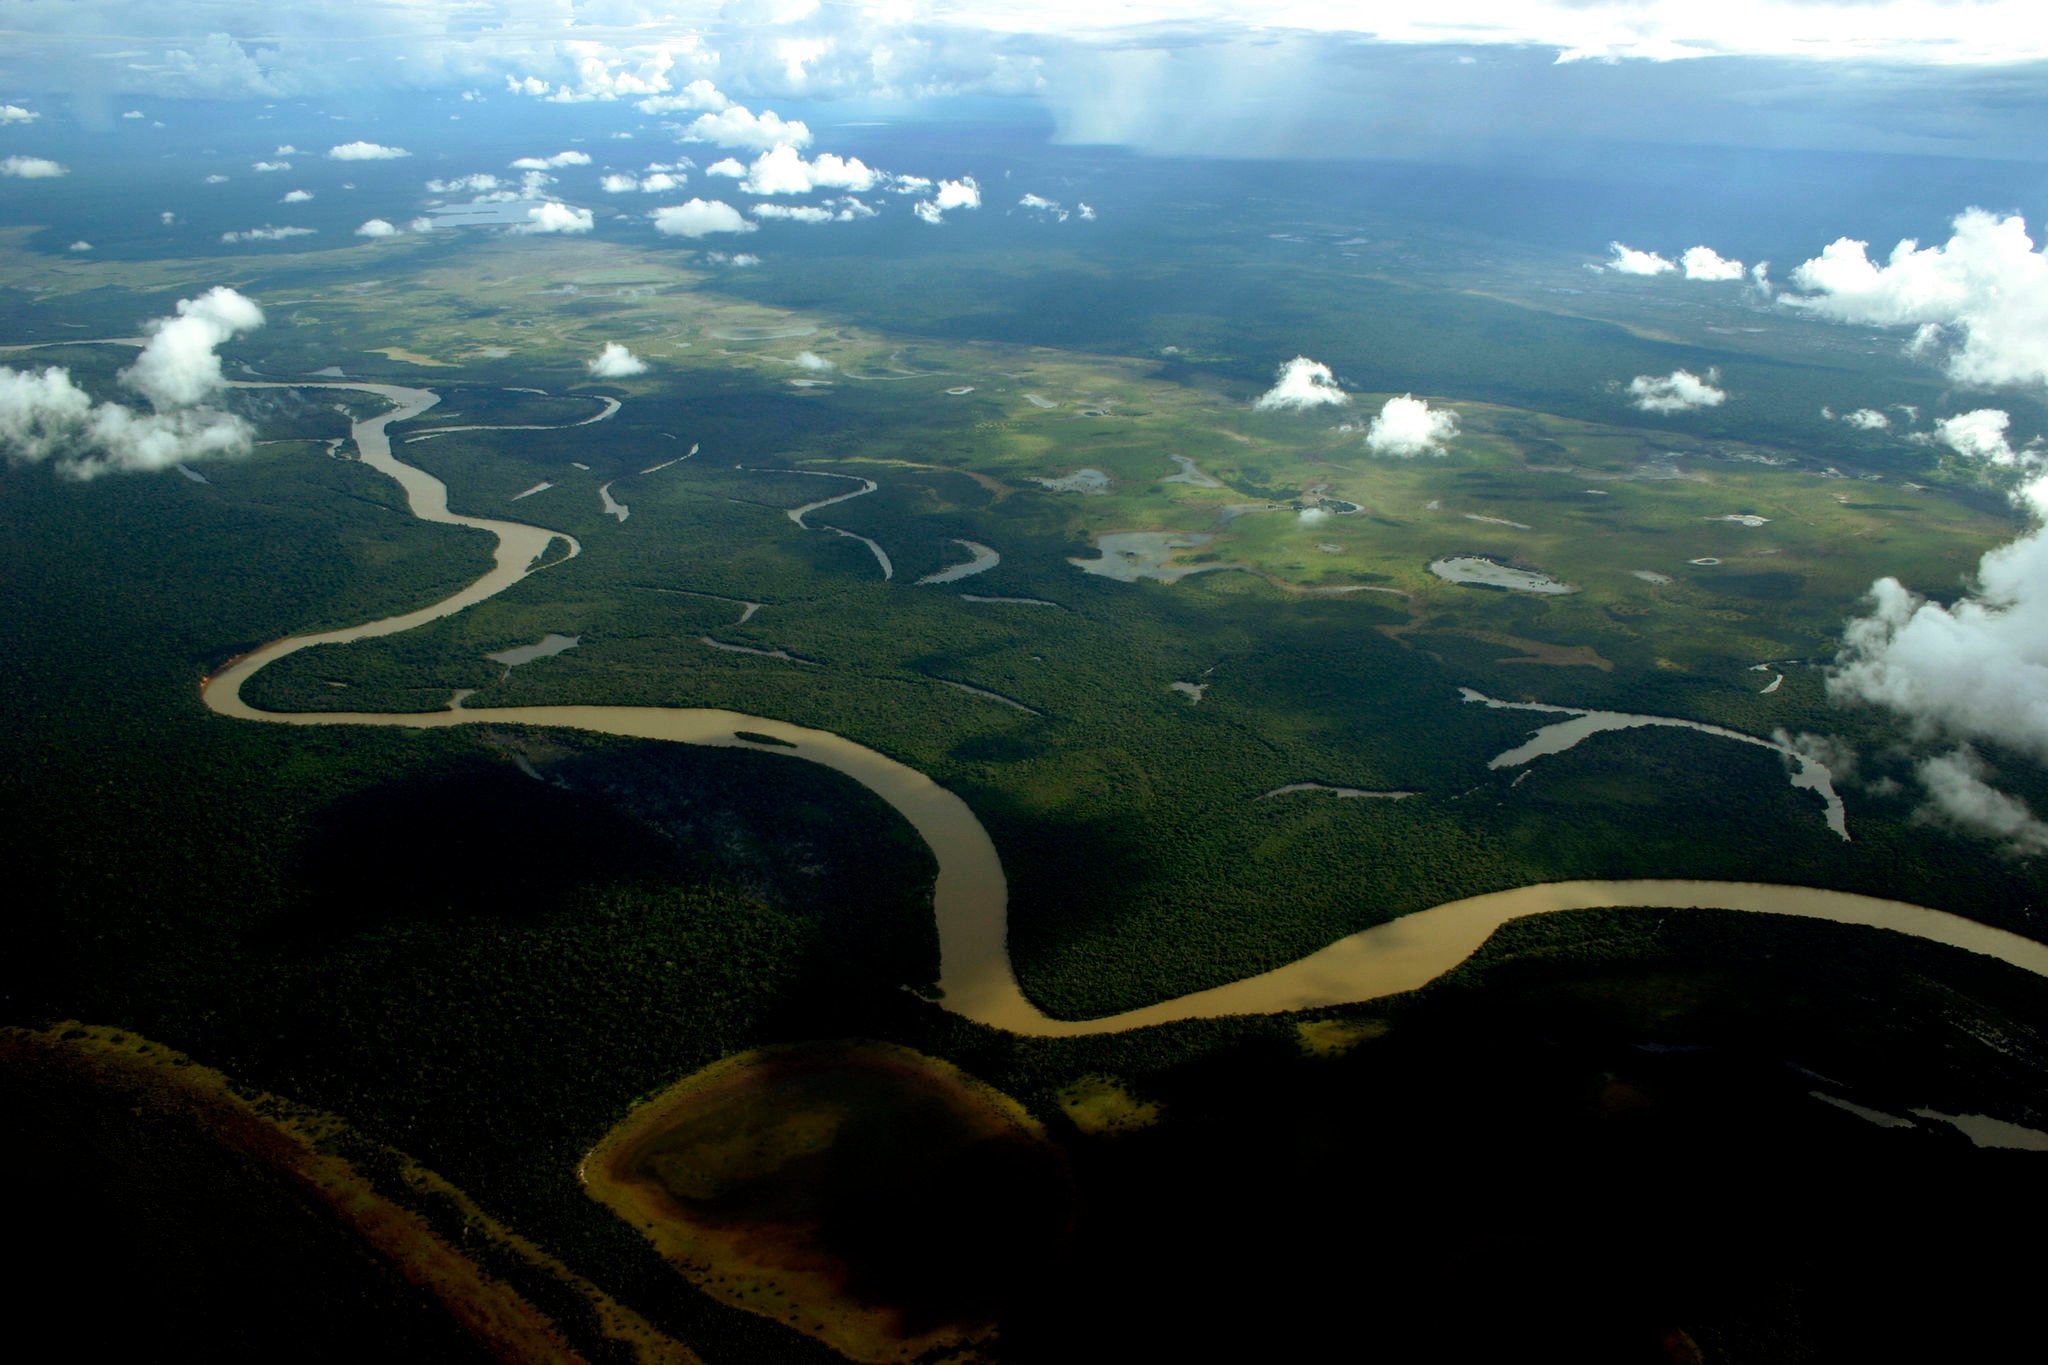 Turismo em terras indígenas | Parque Nacional do Xingu | Conexão123